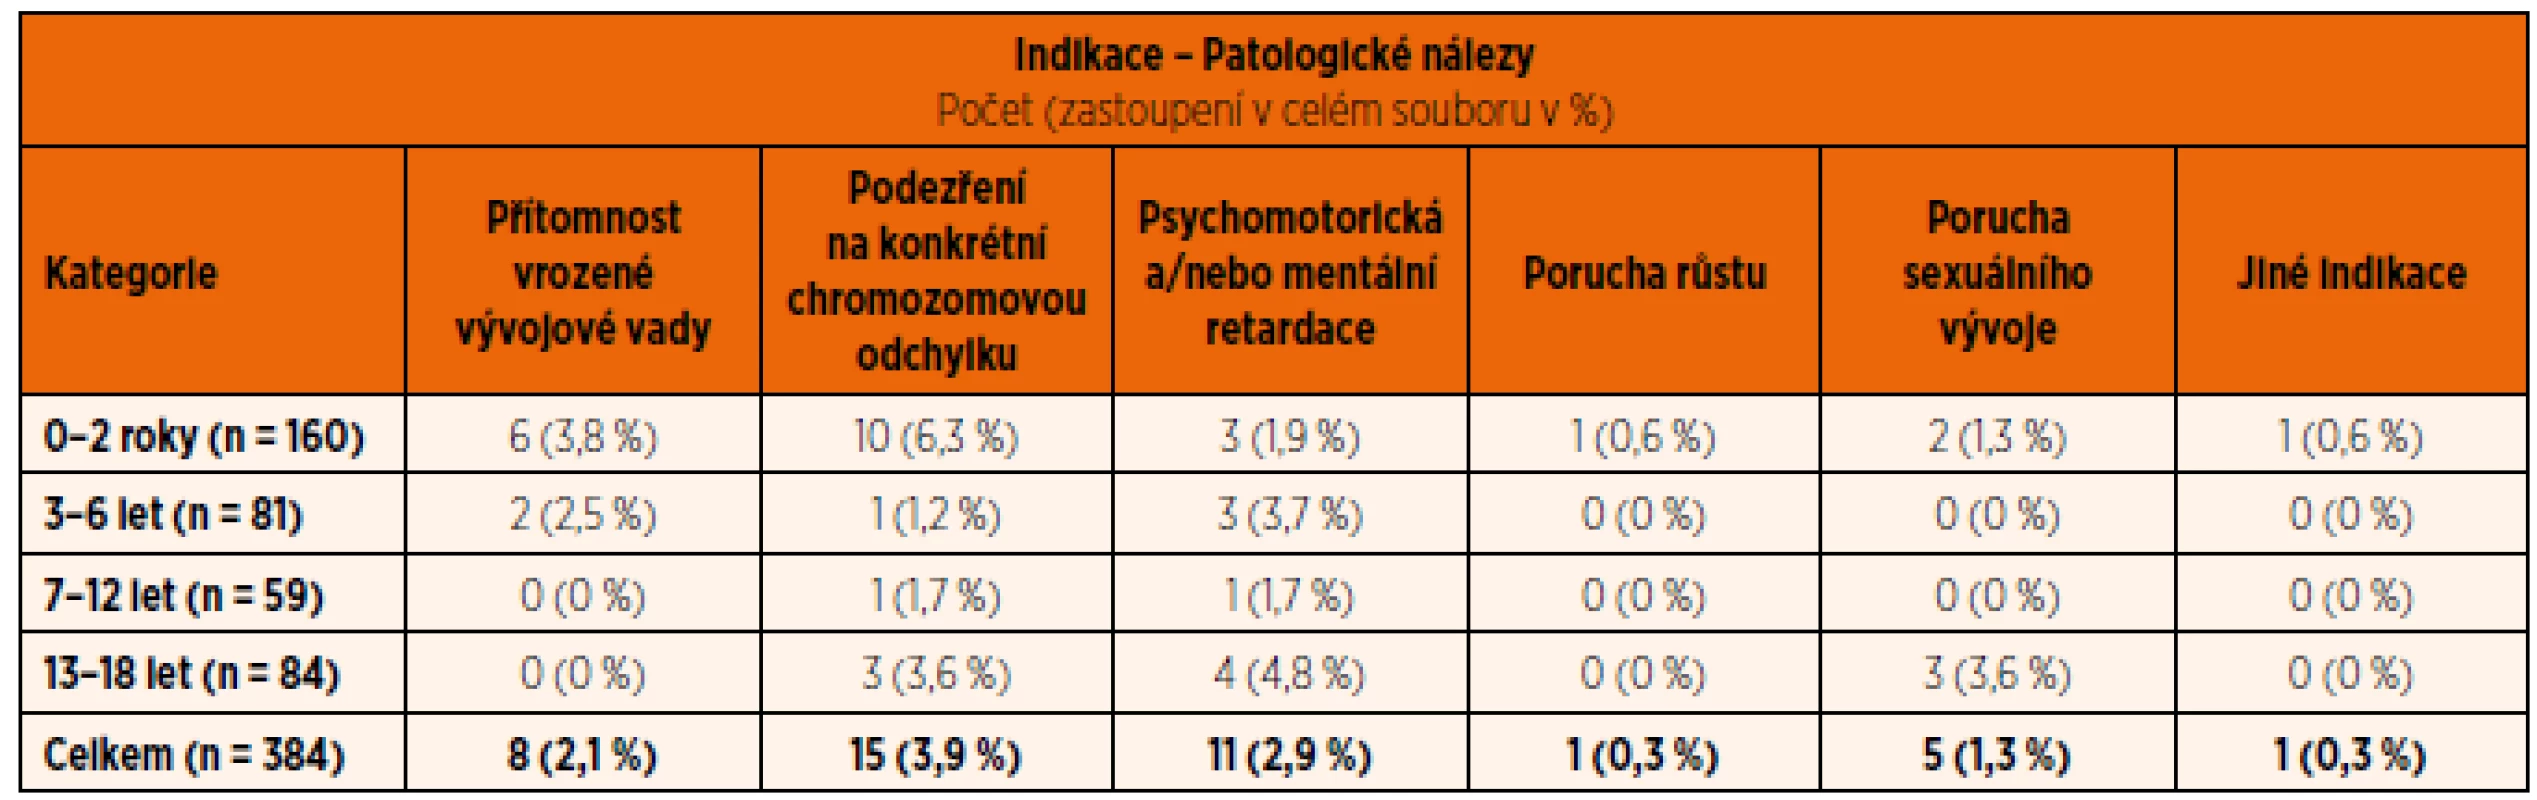 Rozdělení pozitivních nálezů (patologický karyotyp) podle věku a indikační skupiny – zastoupení (podíly) v celém souboru v % (Cytogenetická laboratoř ÚBLG, 2010–2012).